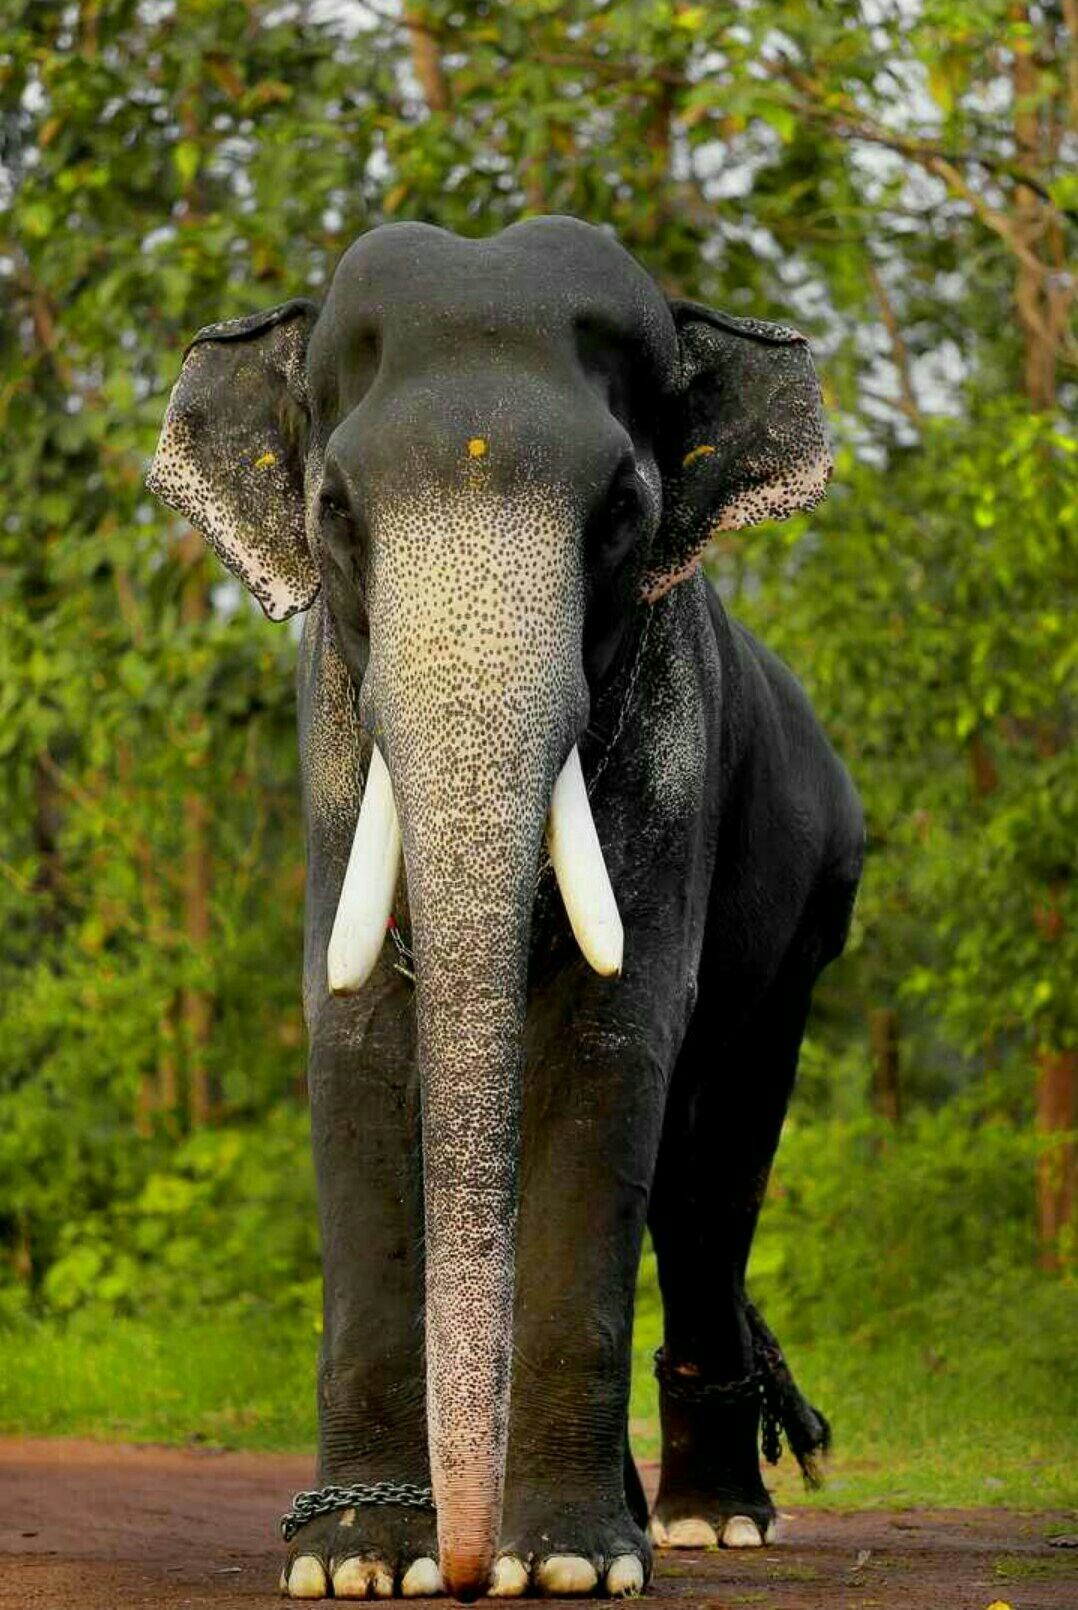 മംഗലാംകുന്ന്‌ കർണ്ണൻ. Elephants photo, Elephant photography, Elephant image